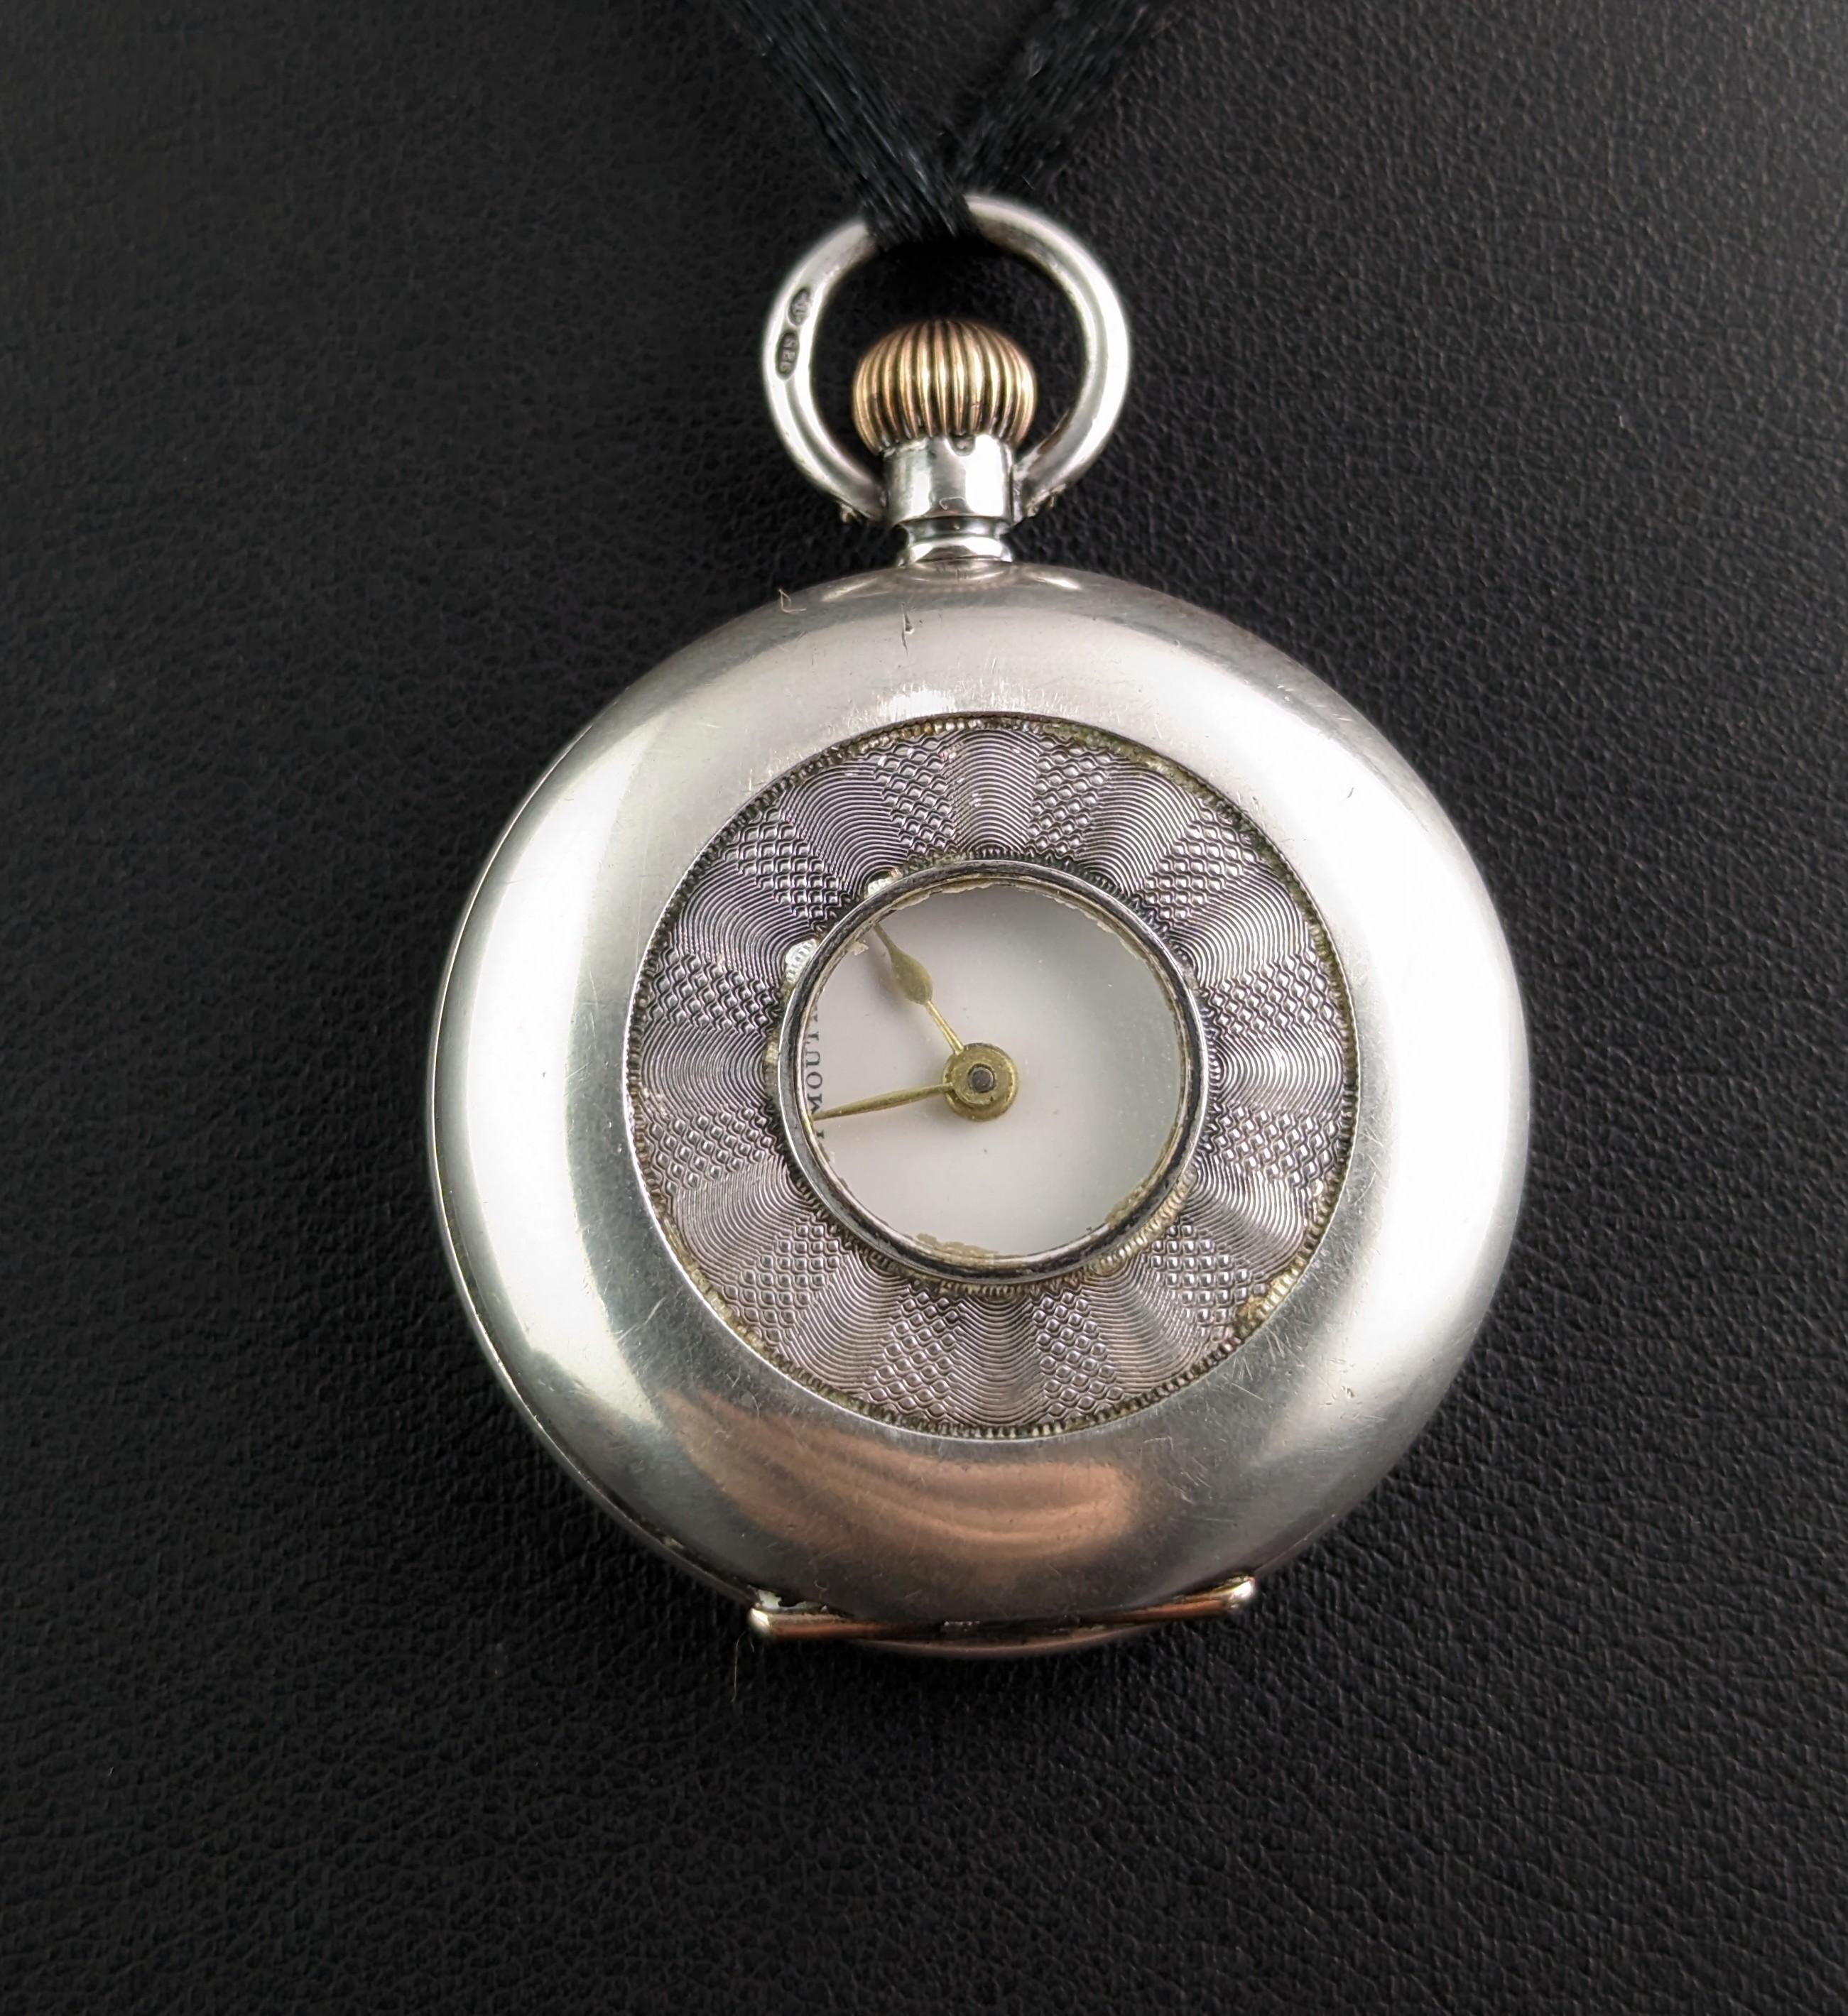 Diese klassische antike silberne Jägeruhr ist eine Schönheit aus der Edwardianischen Zeit.

Die Taschenuhr verleiht jedem Look Raffinesse und ist das perfekte Accessoire für alle, die einen Hauch von Vintage-Flair in ihre Garderobe bringen